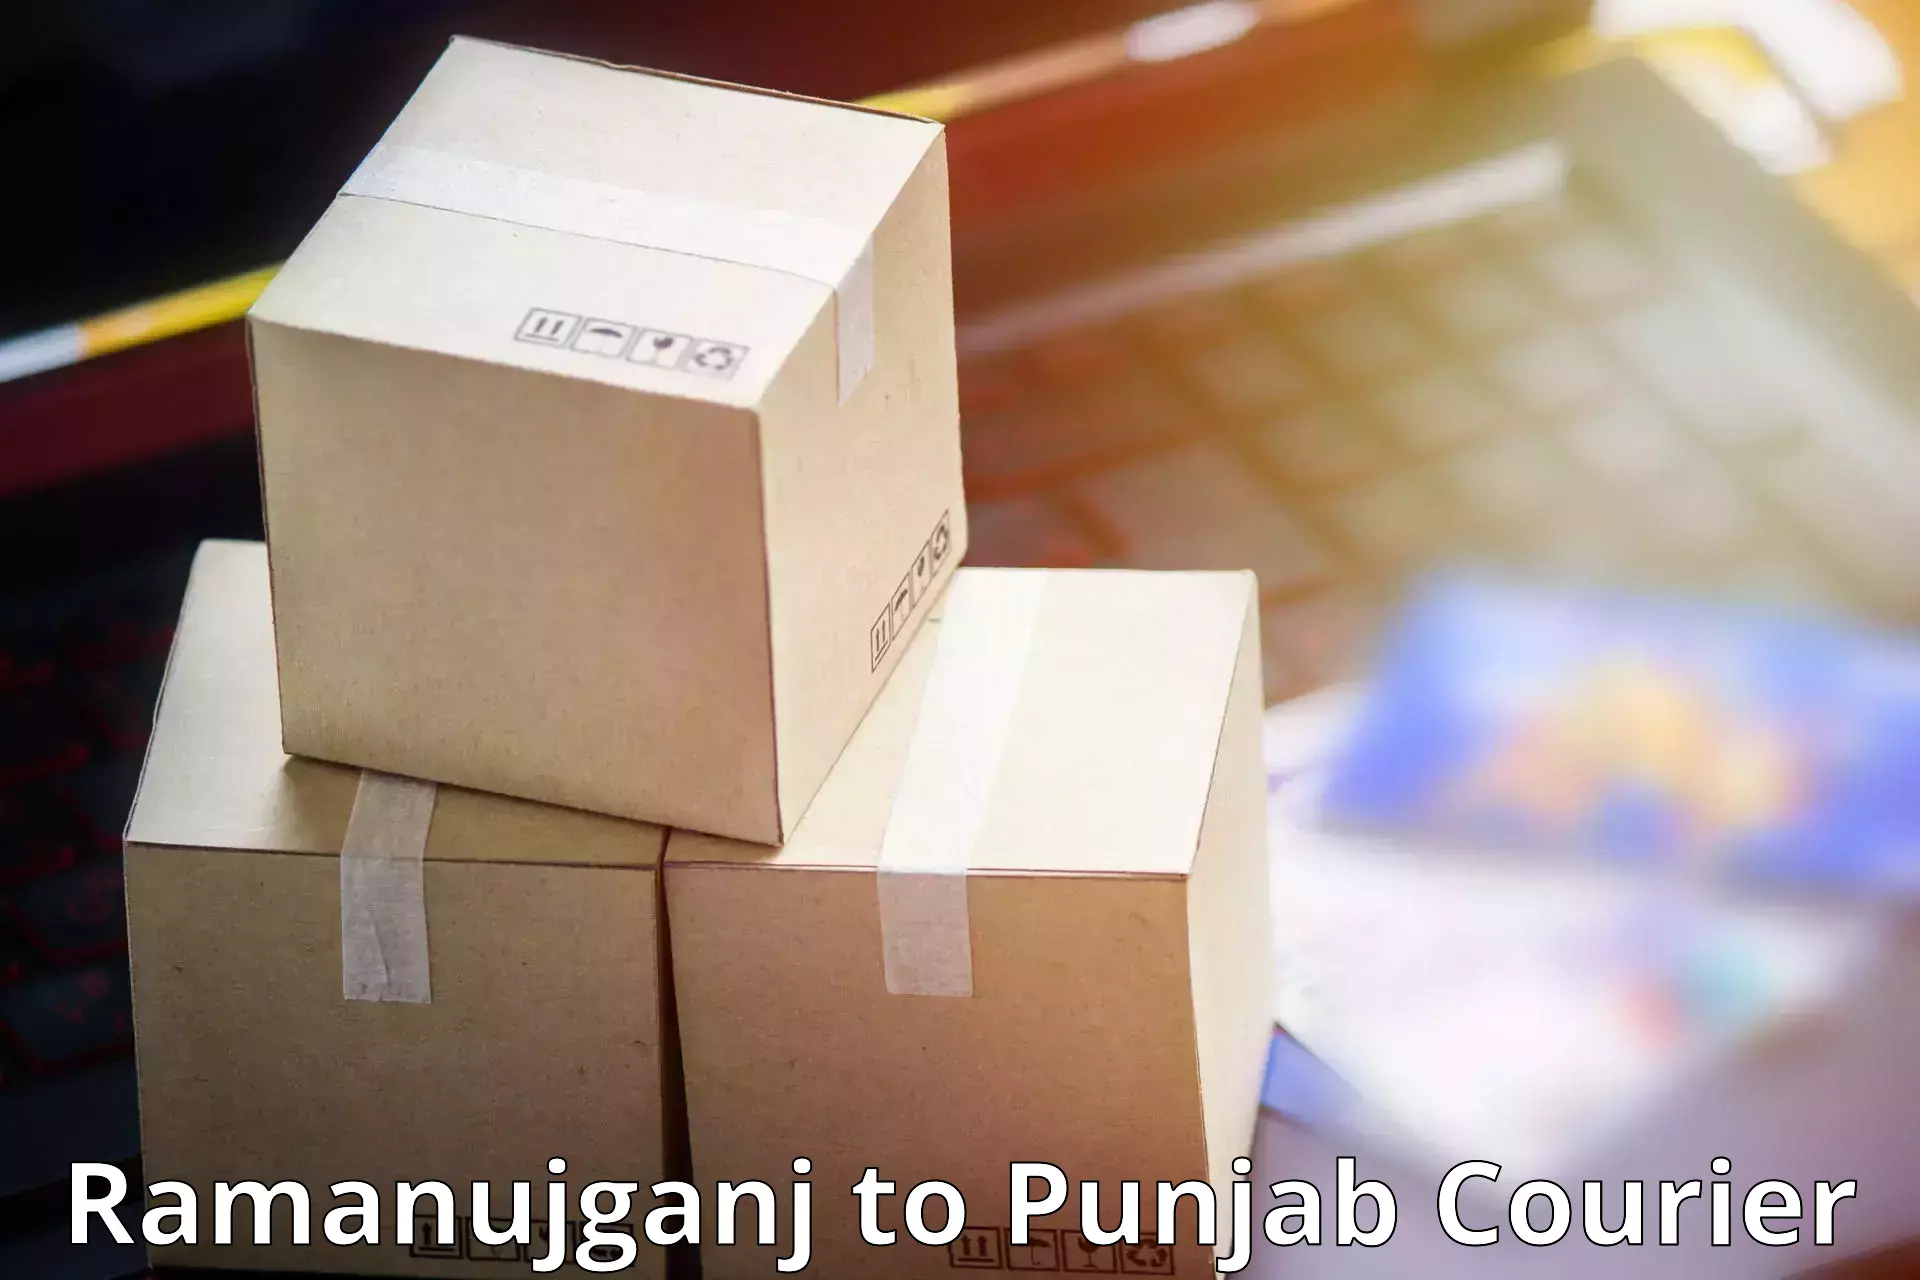 Efficient cargo handling Ramanujganj to Punjab